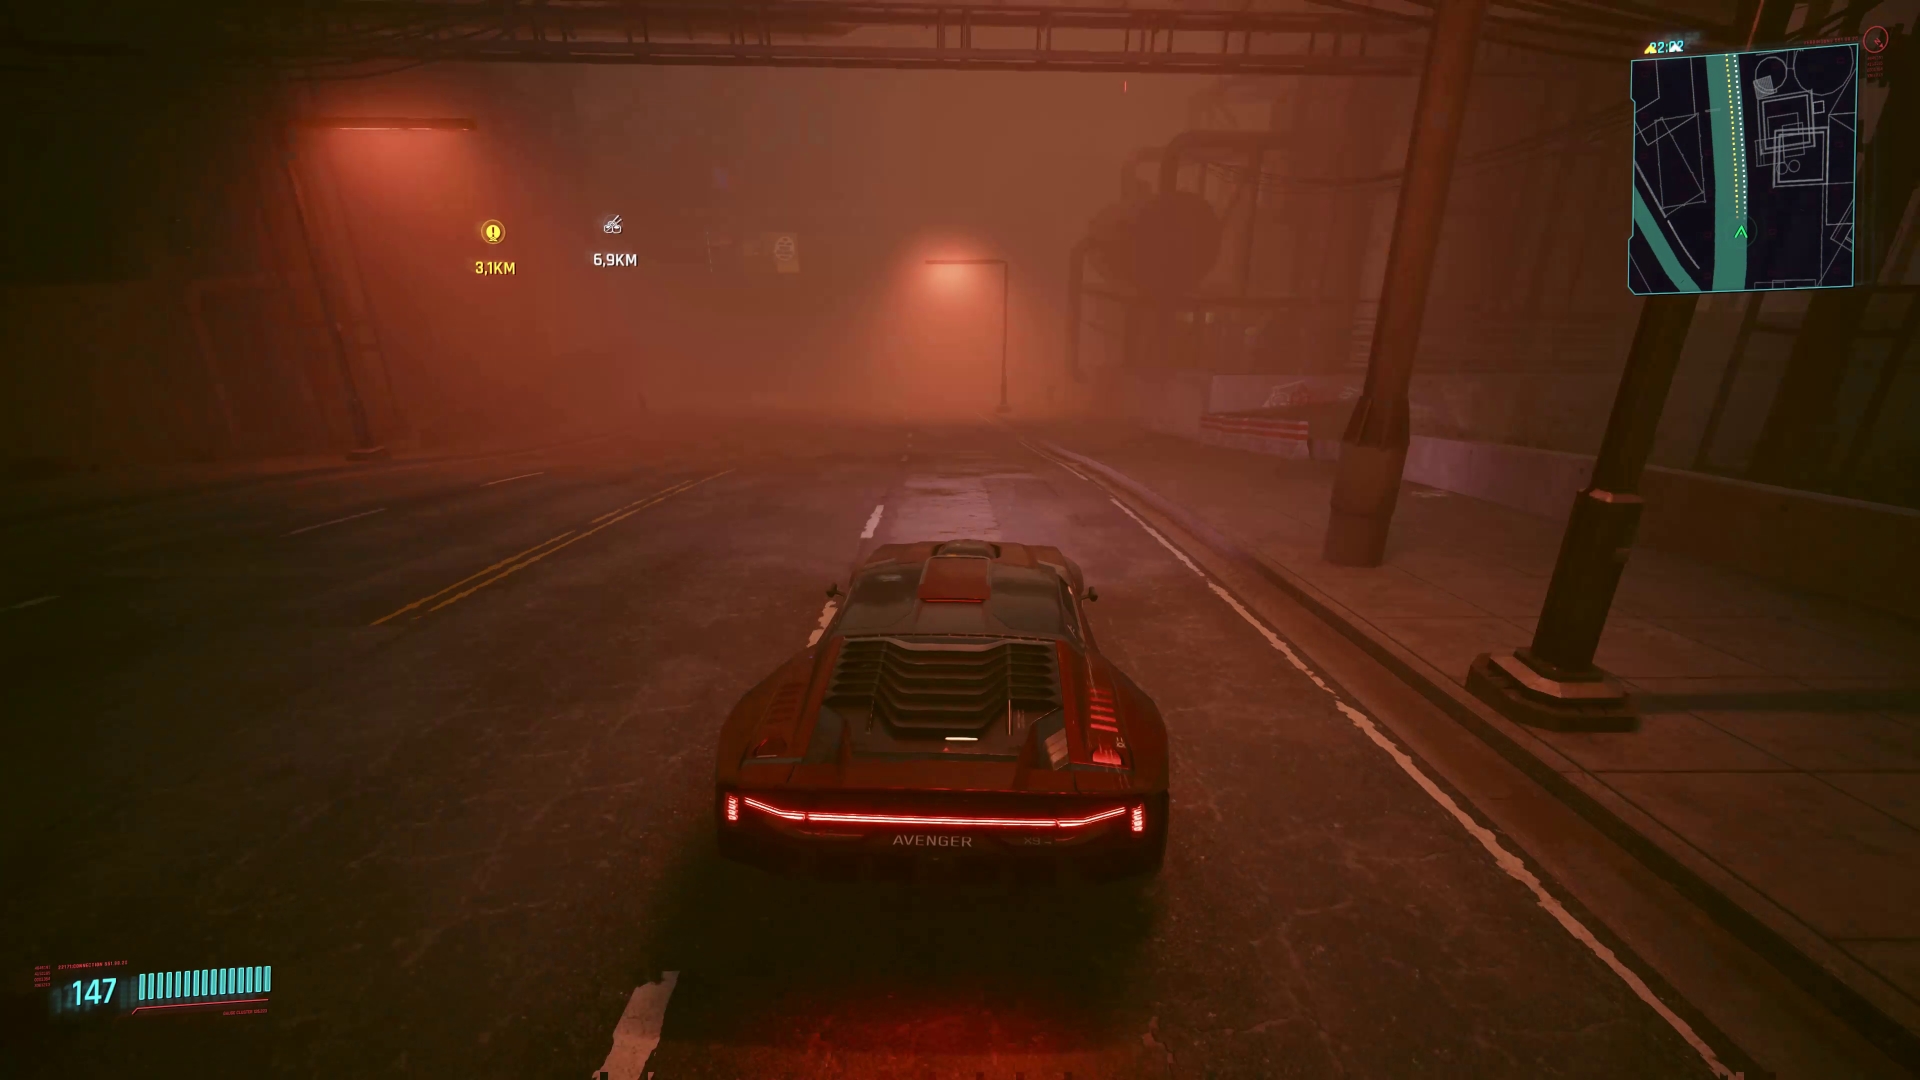 Roter Sportwagen fährt durch dunkle neblige Strasse. Screenshot aus dem Spiel Cyberpunk 2077.